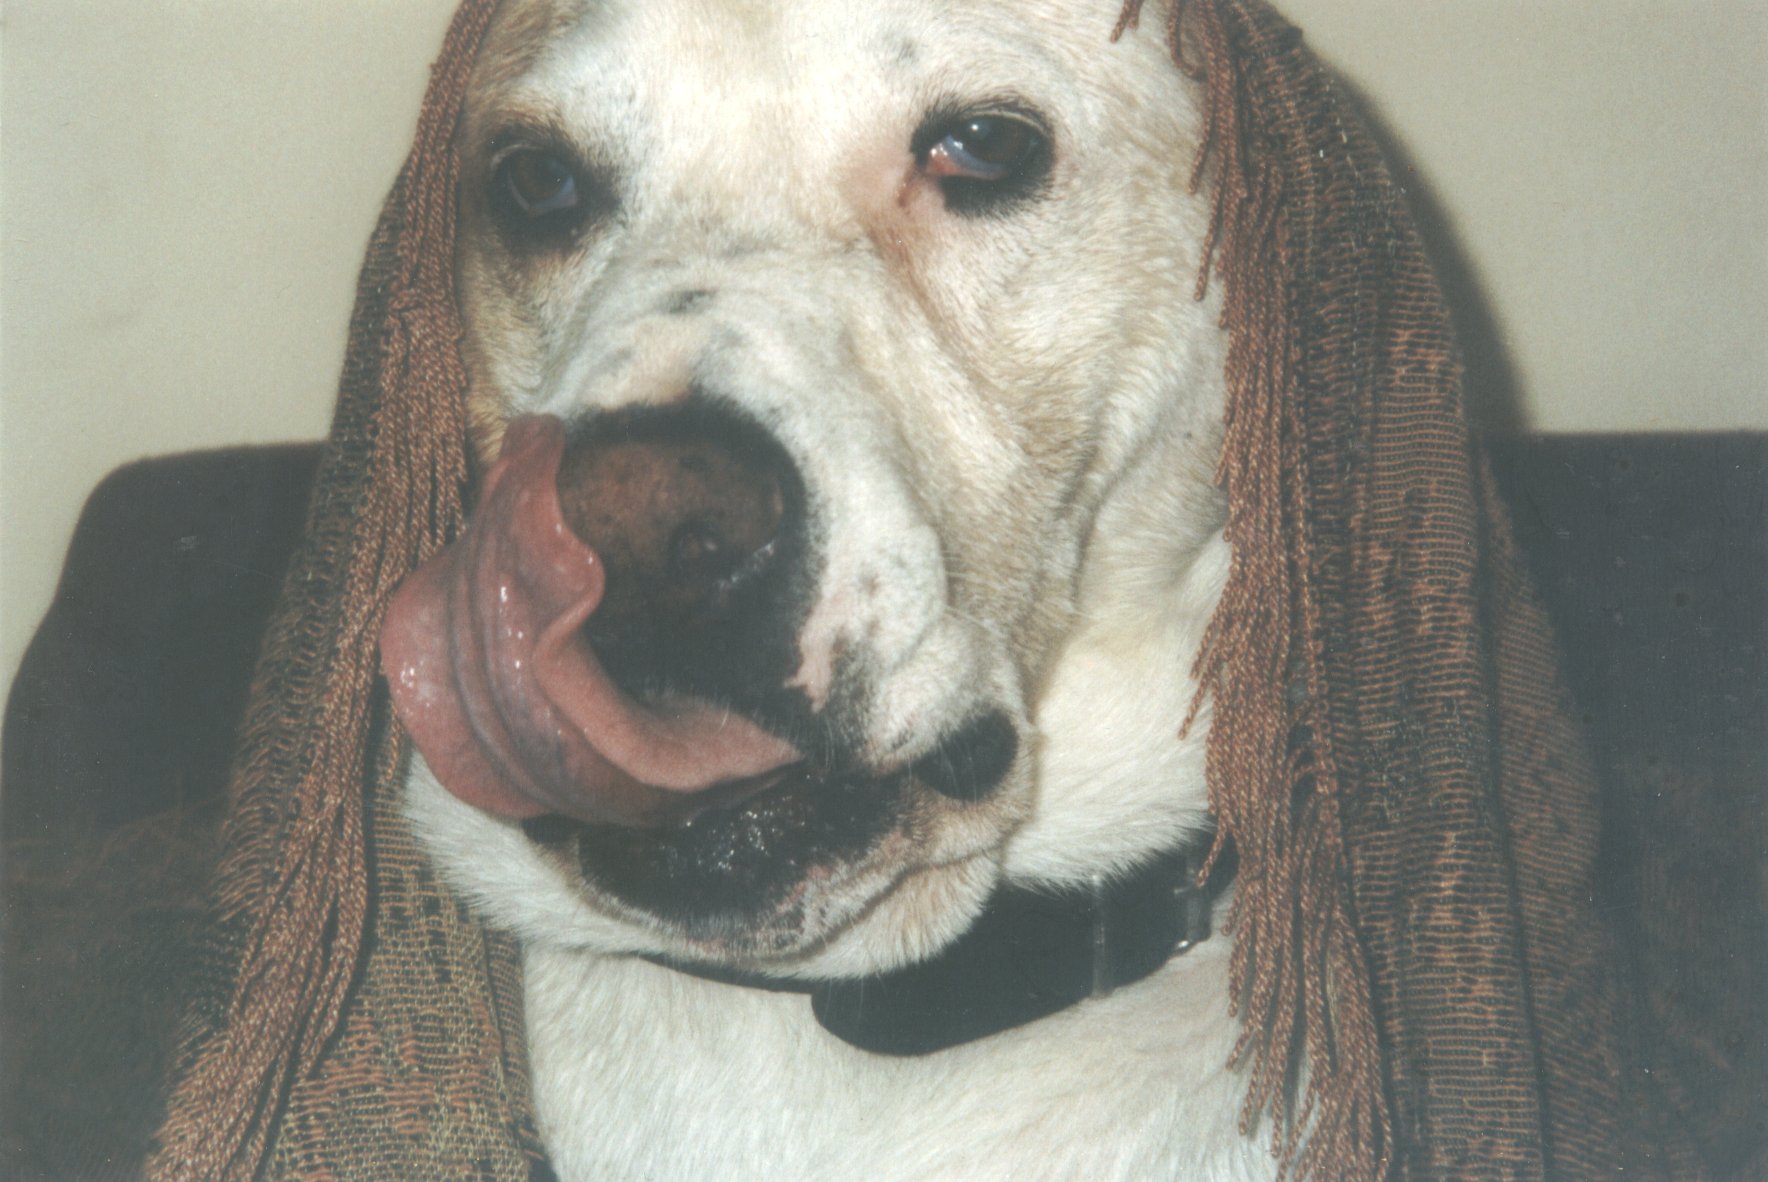 Portraitphoto von dem Hund Ganesh in einer Wohnung in Traunstein in Bayern im Jahr 2006. Photograph: Ralf Splettstösser.